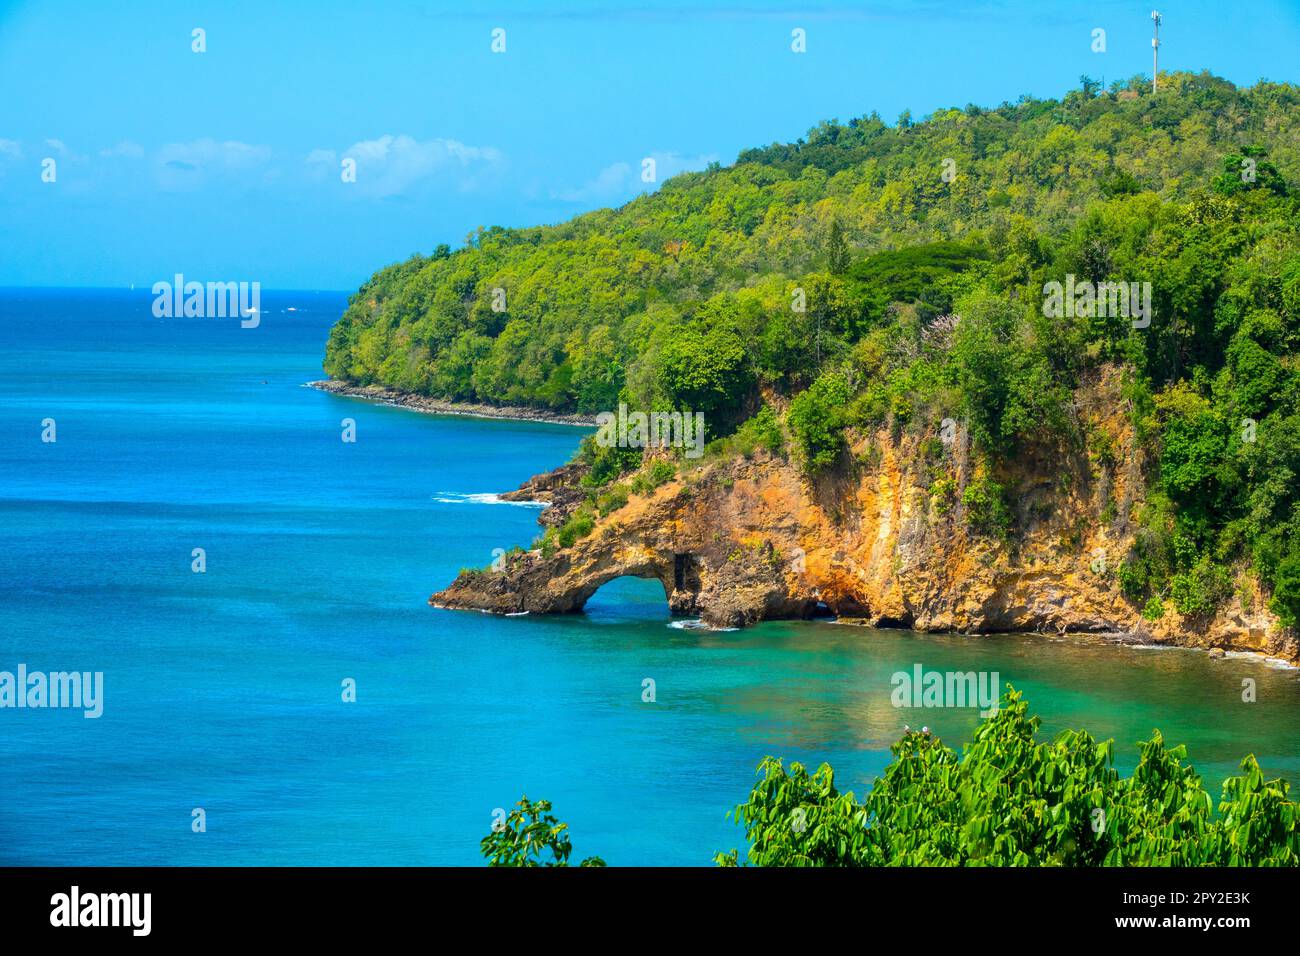 La vue Scenic sur Sainte-Lucie (Saint Lucien créole Français: Envoyé Lisi, Français: Sainte-Lucie) est une île des Antilles dans le Carib oriental Banque D'Images